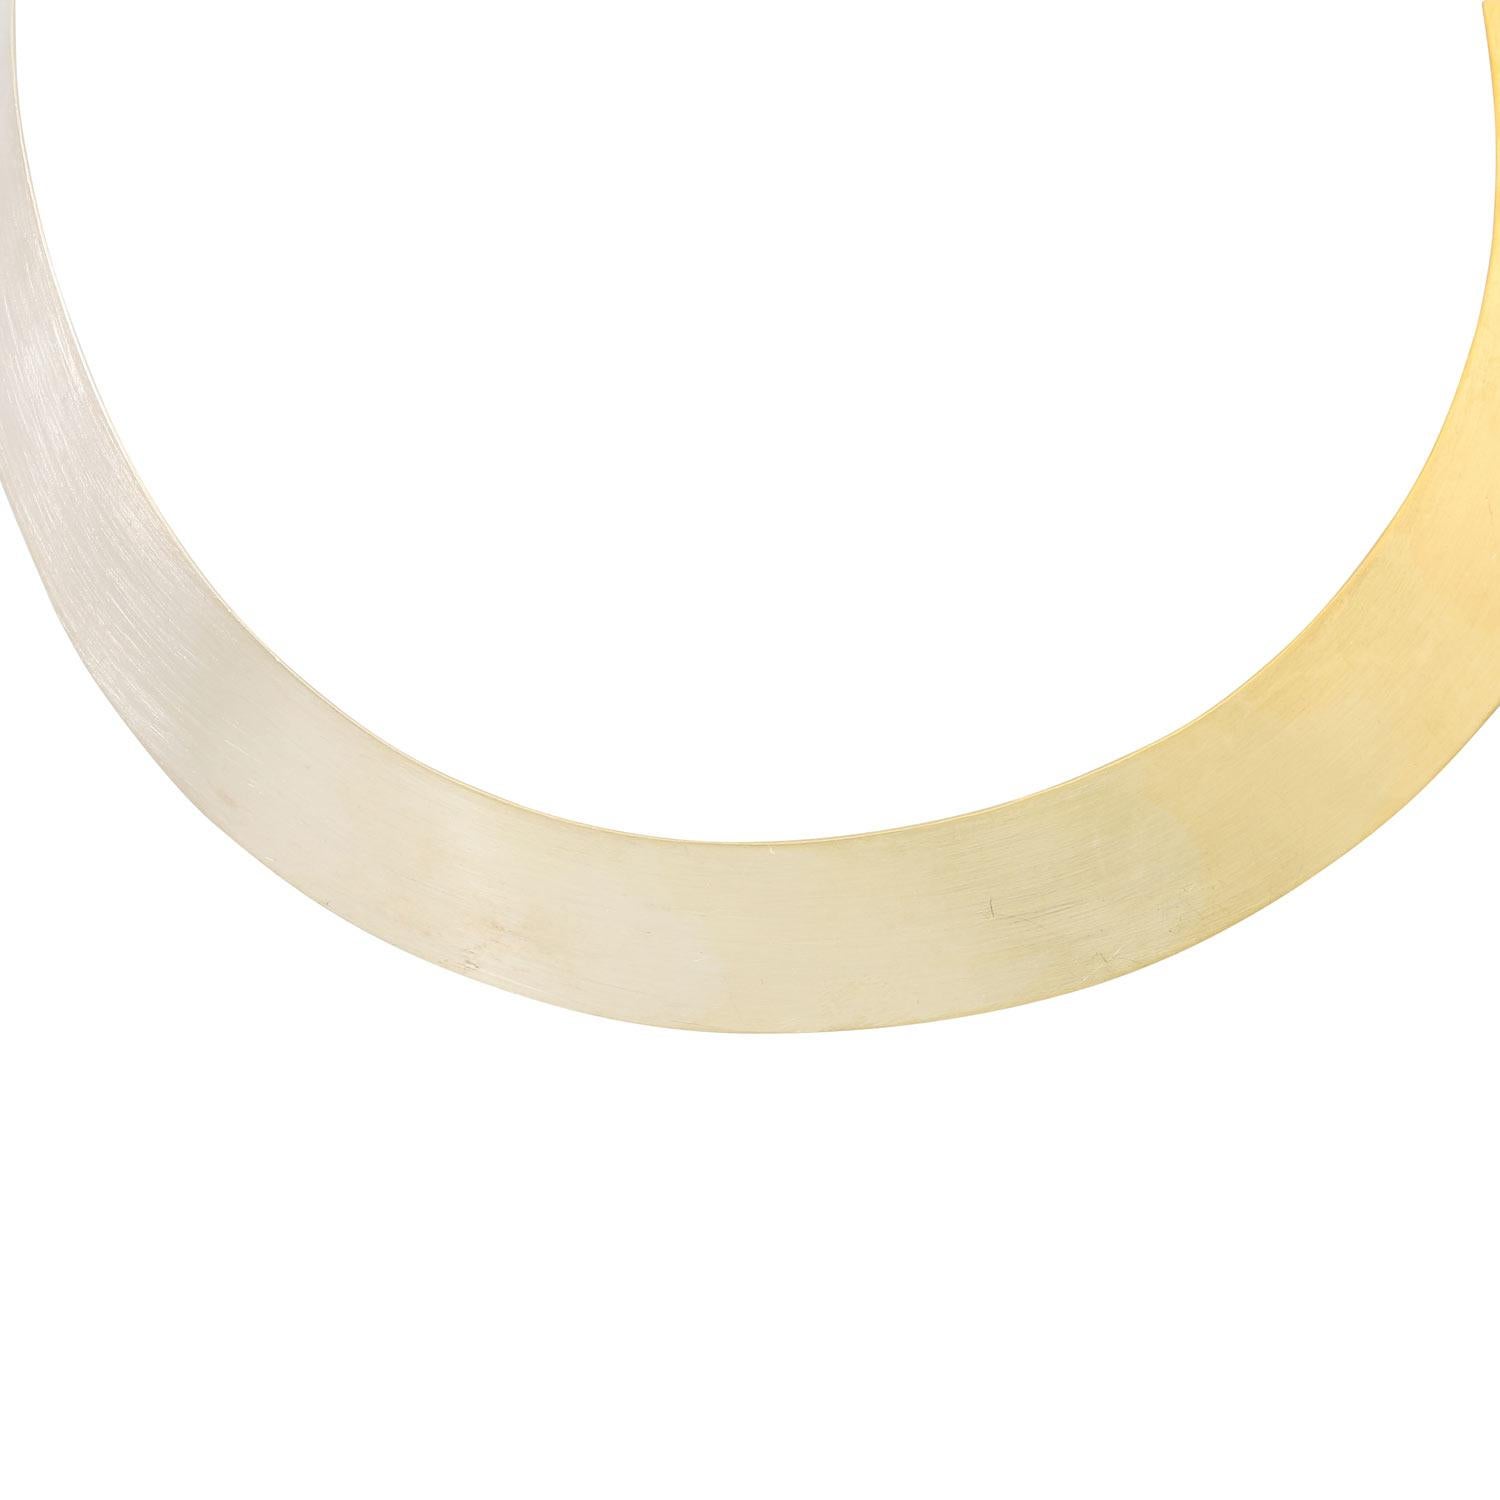 Or jaune/or blanc 14K en progression, prix : 7 210 € (2011), 52,1 g, circonférence intérieure environ 38 cm, avec traces d'usure, avec marque du fabricant, y compris copie du ticket de caisse.

 Tour de cou Niessing 'Iris Polar' en or 14K gradué de